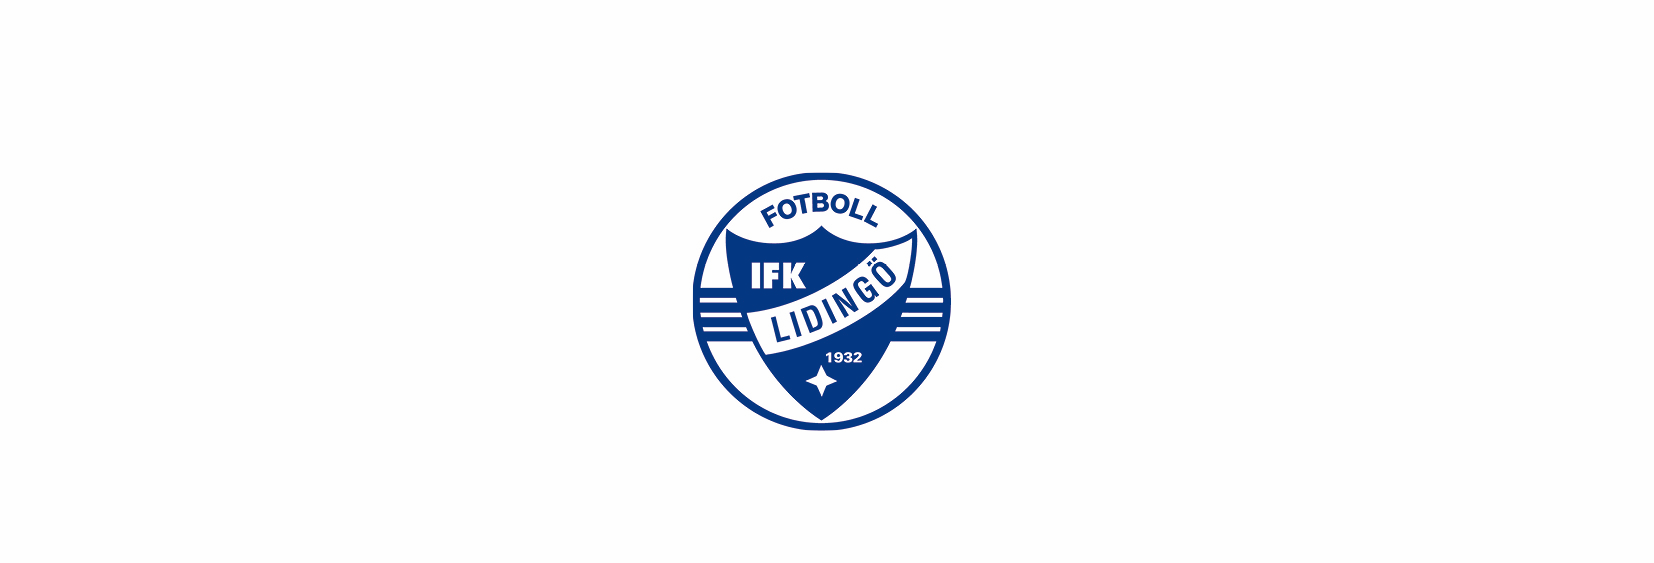 1 IFK Lidingö FK 2014 2014 har varit ett händelserikt år och IFK Lidingö FK har fortsatt att växa och passerade 3 000 medlemmar under hösten.